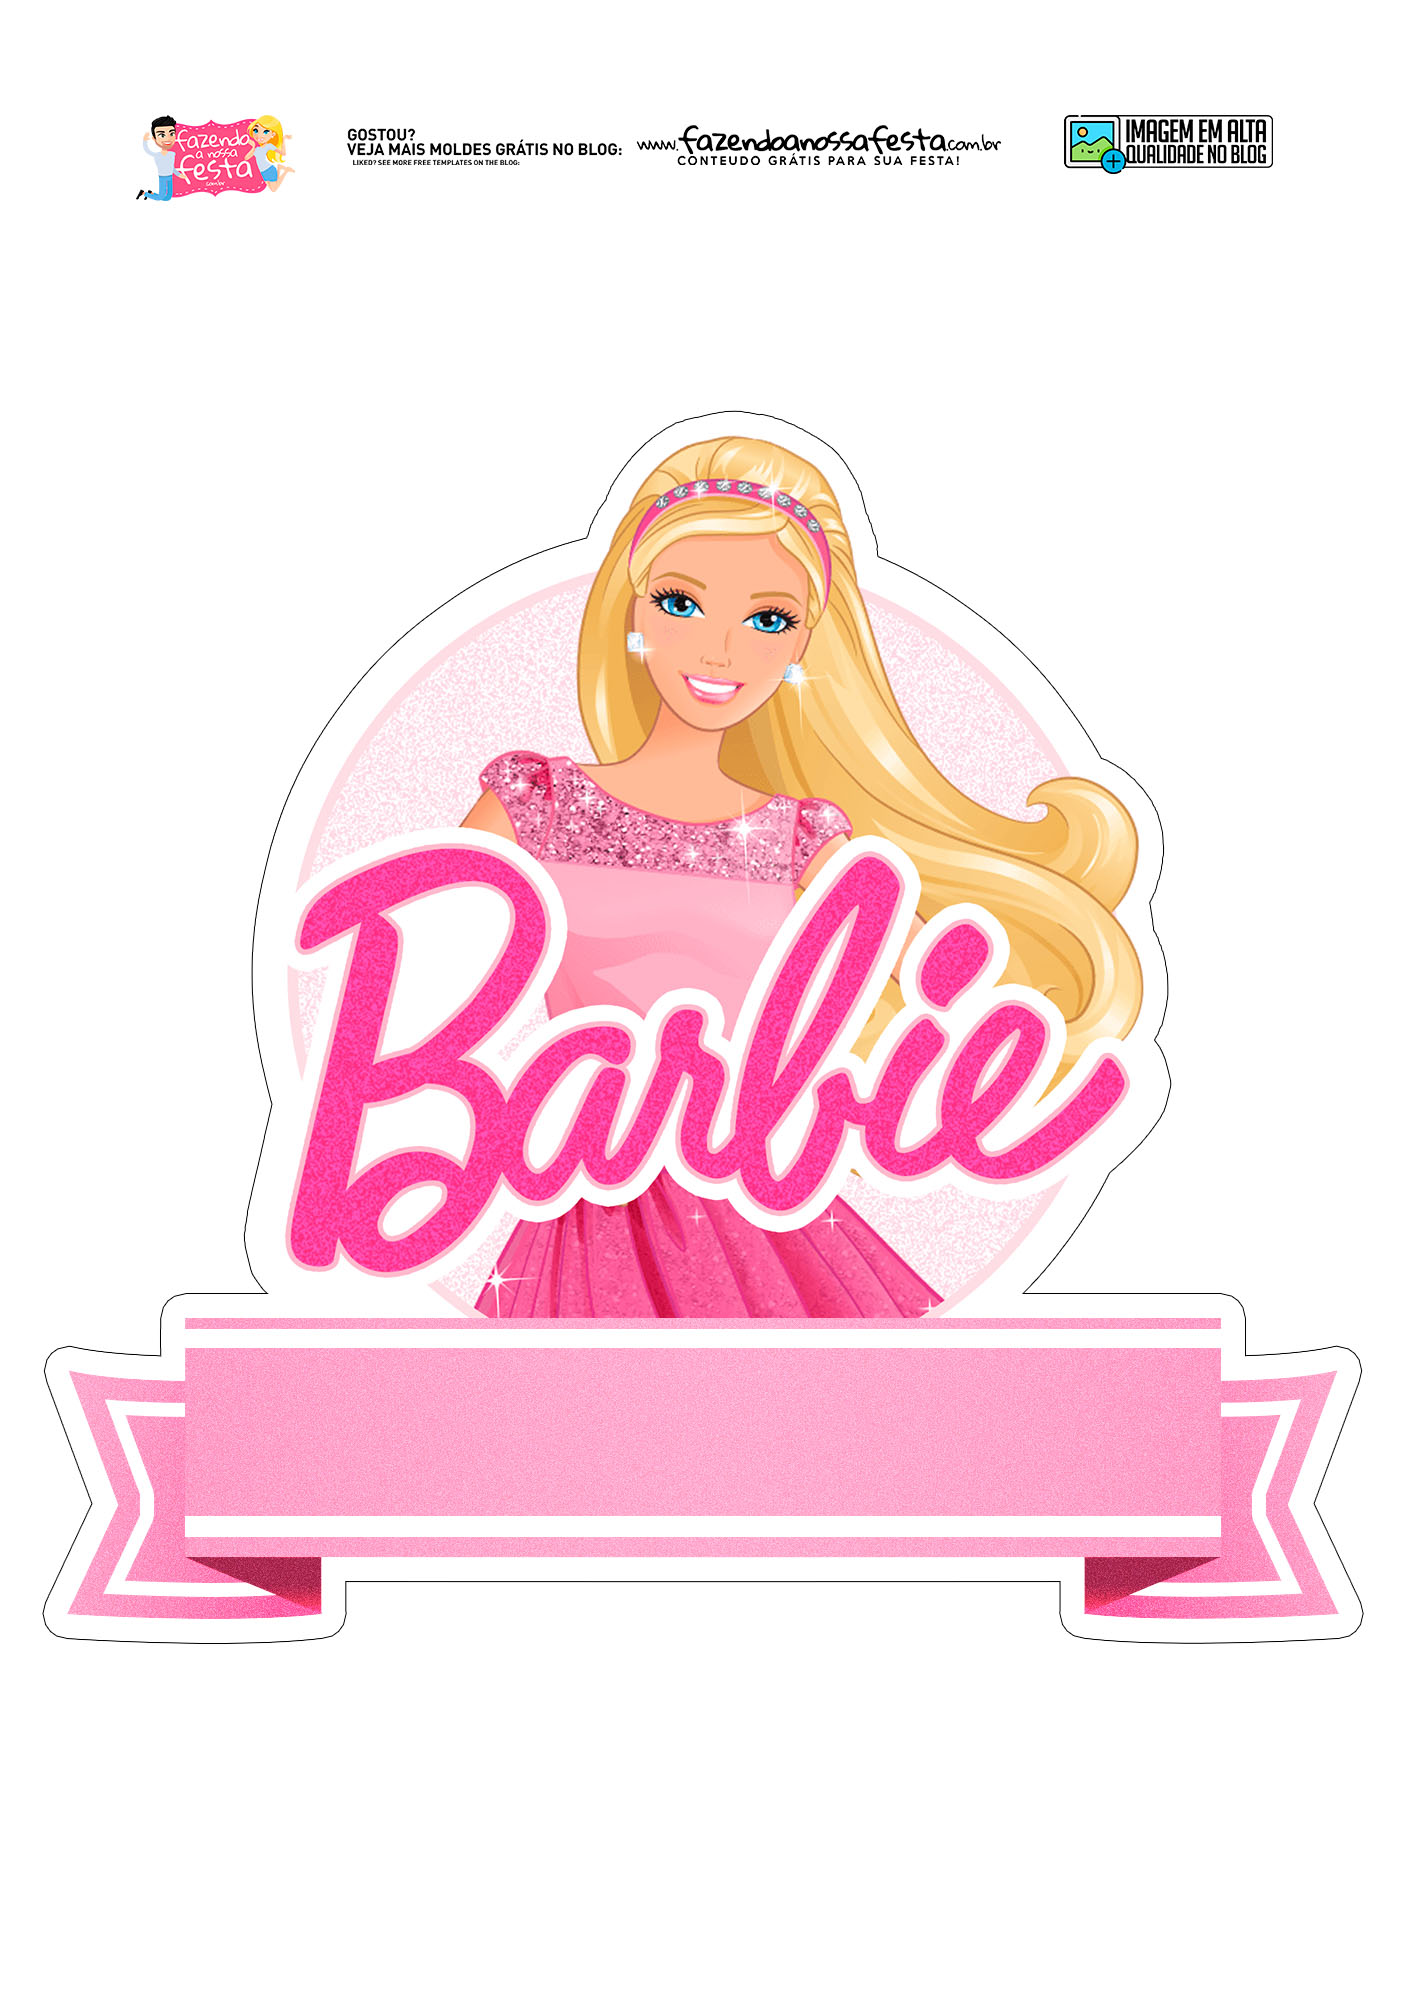 Topo de bolo da Barbie